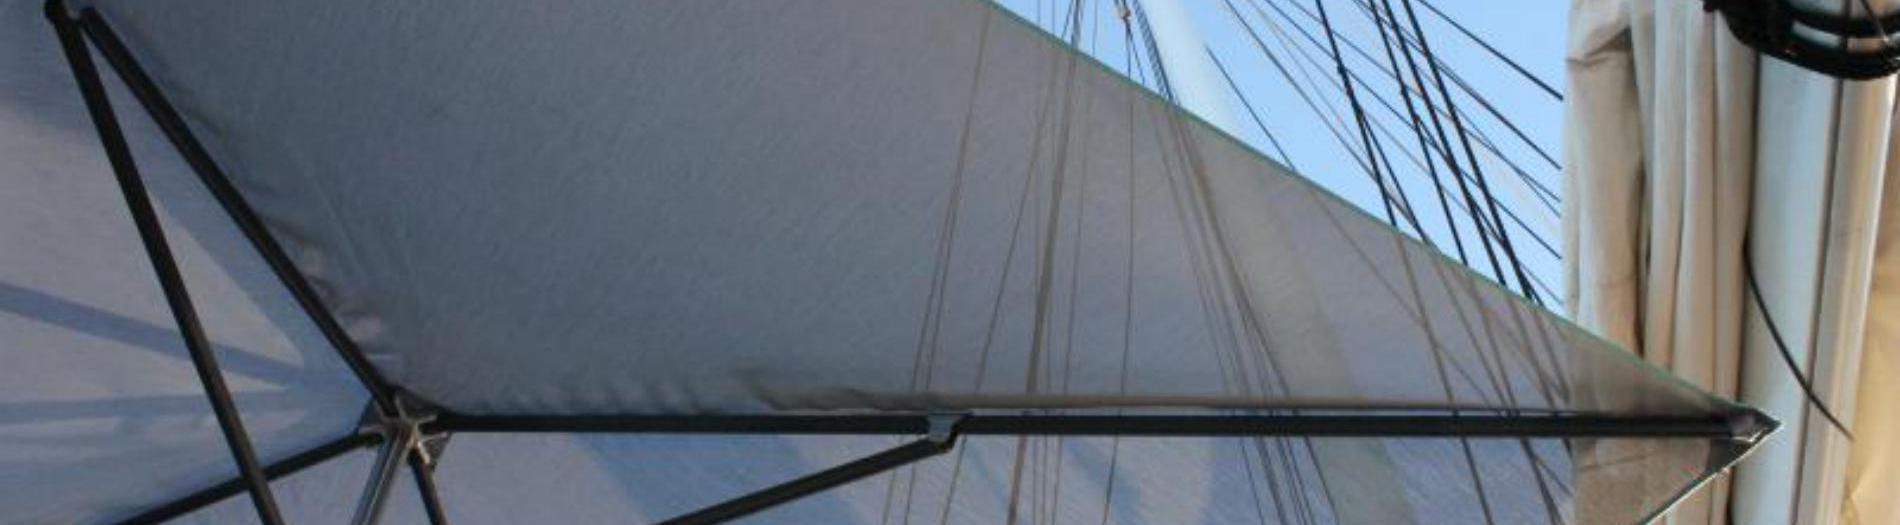 Parasols for yachts and sailboats